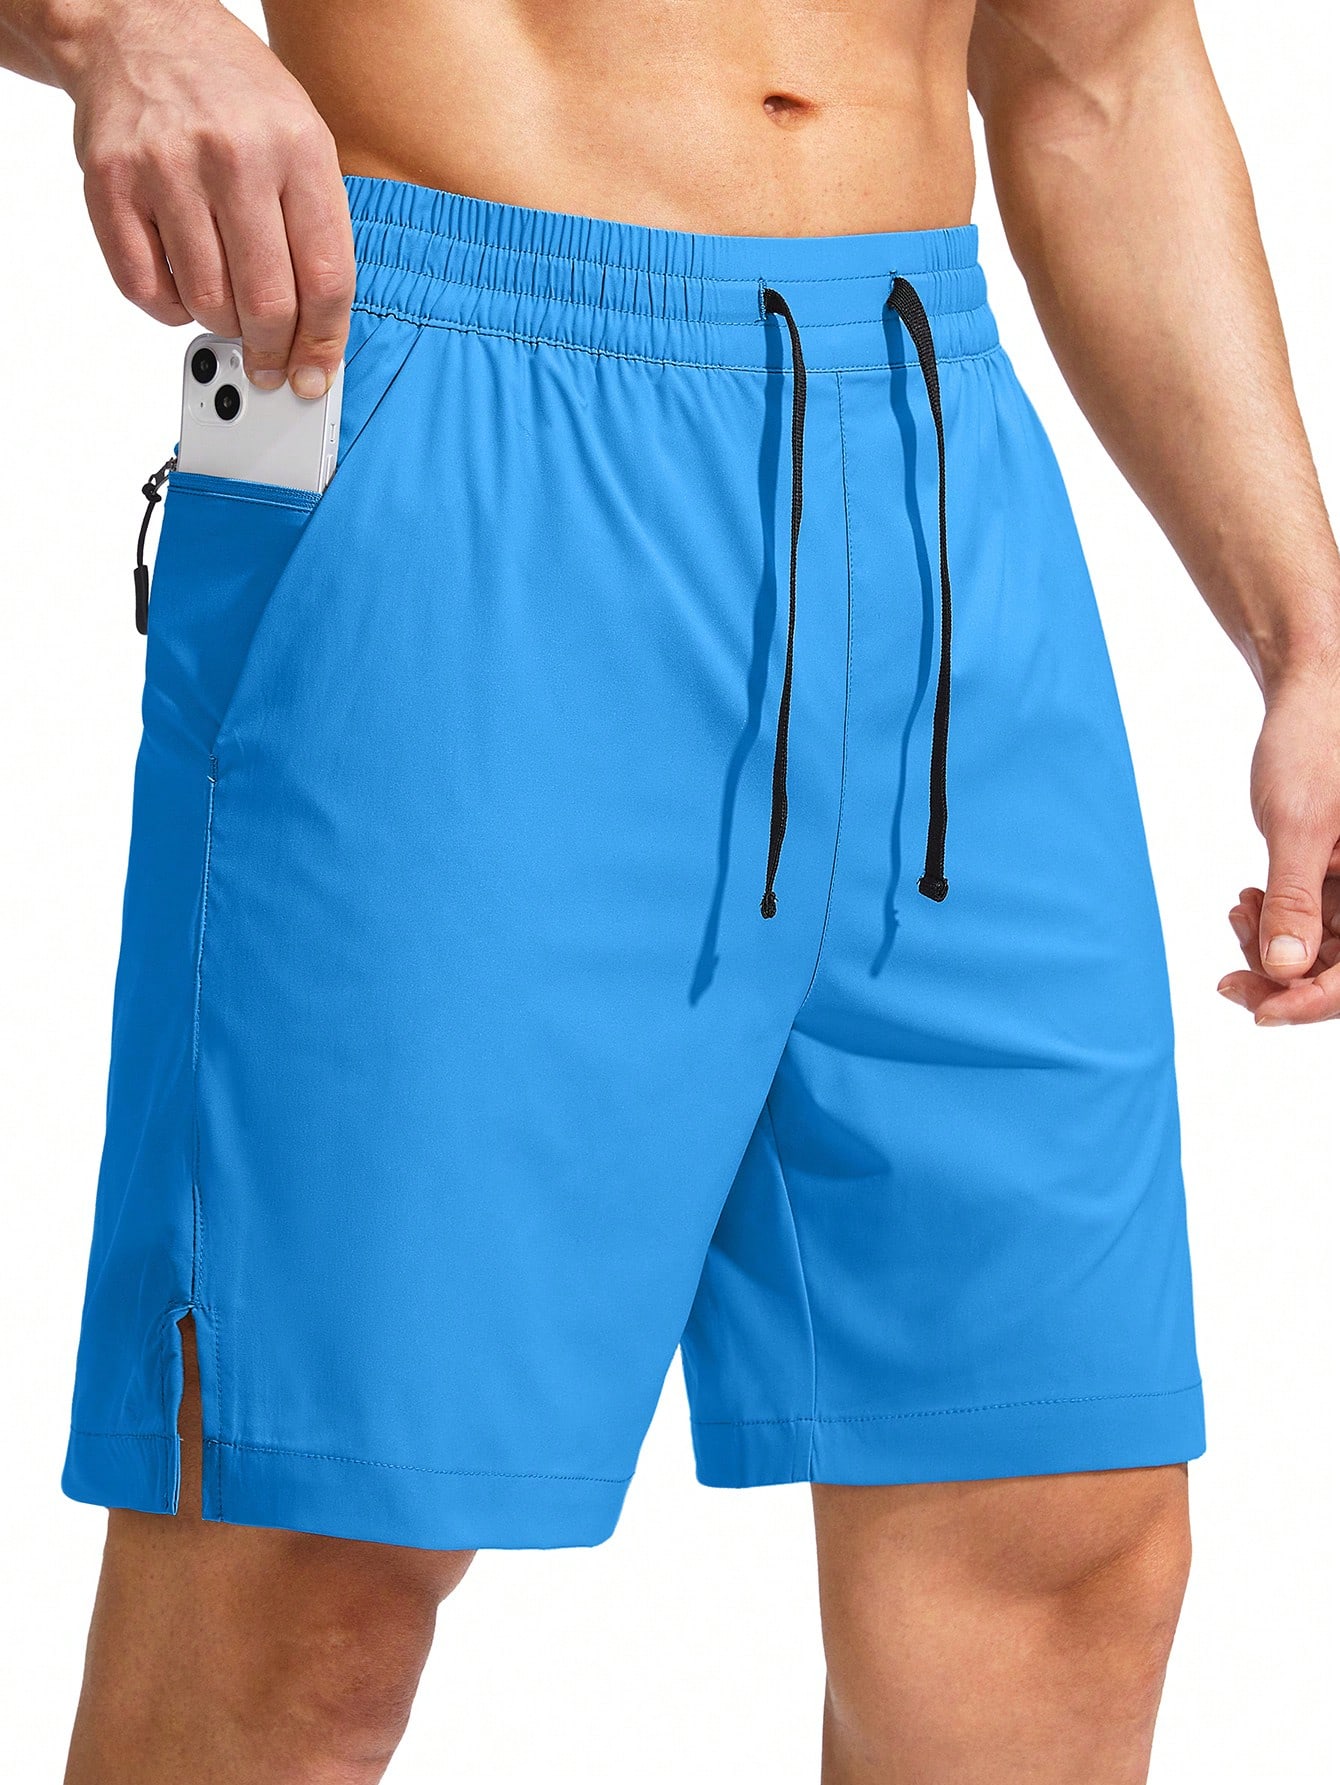 цена G Gradual G Gradual Мужские плавки Быстросохнущий купальный костюм Пляжные шорты для мужчин с карманами на молнии и сетчатой ​​подкладкой Серые шорты, синий